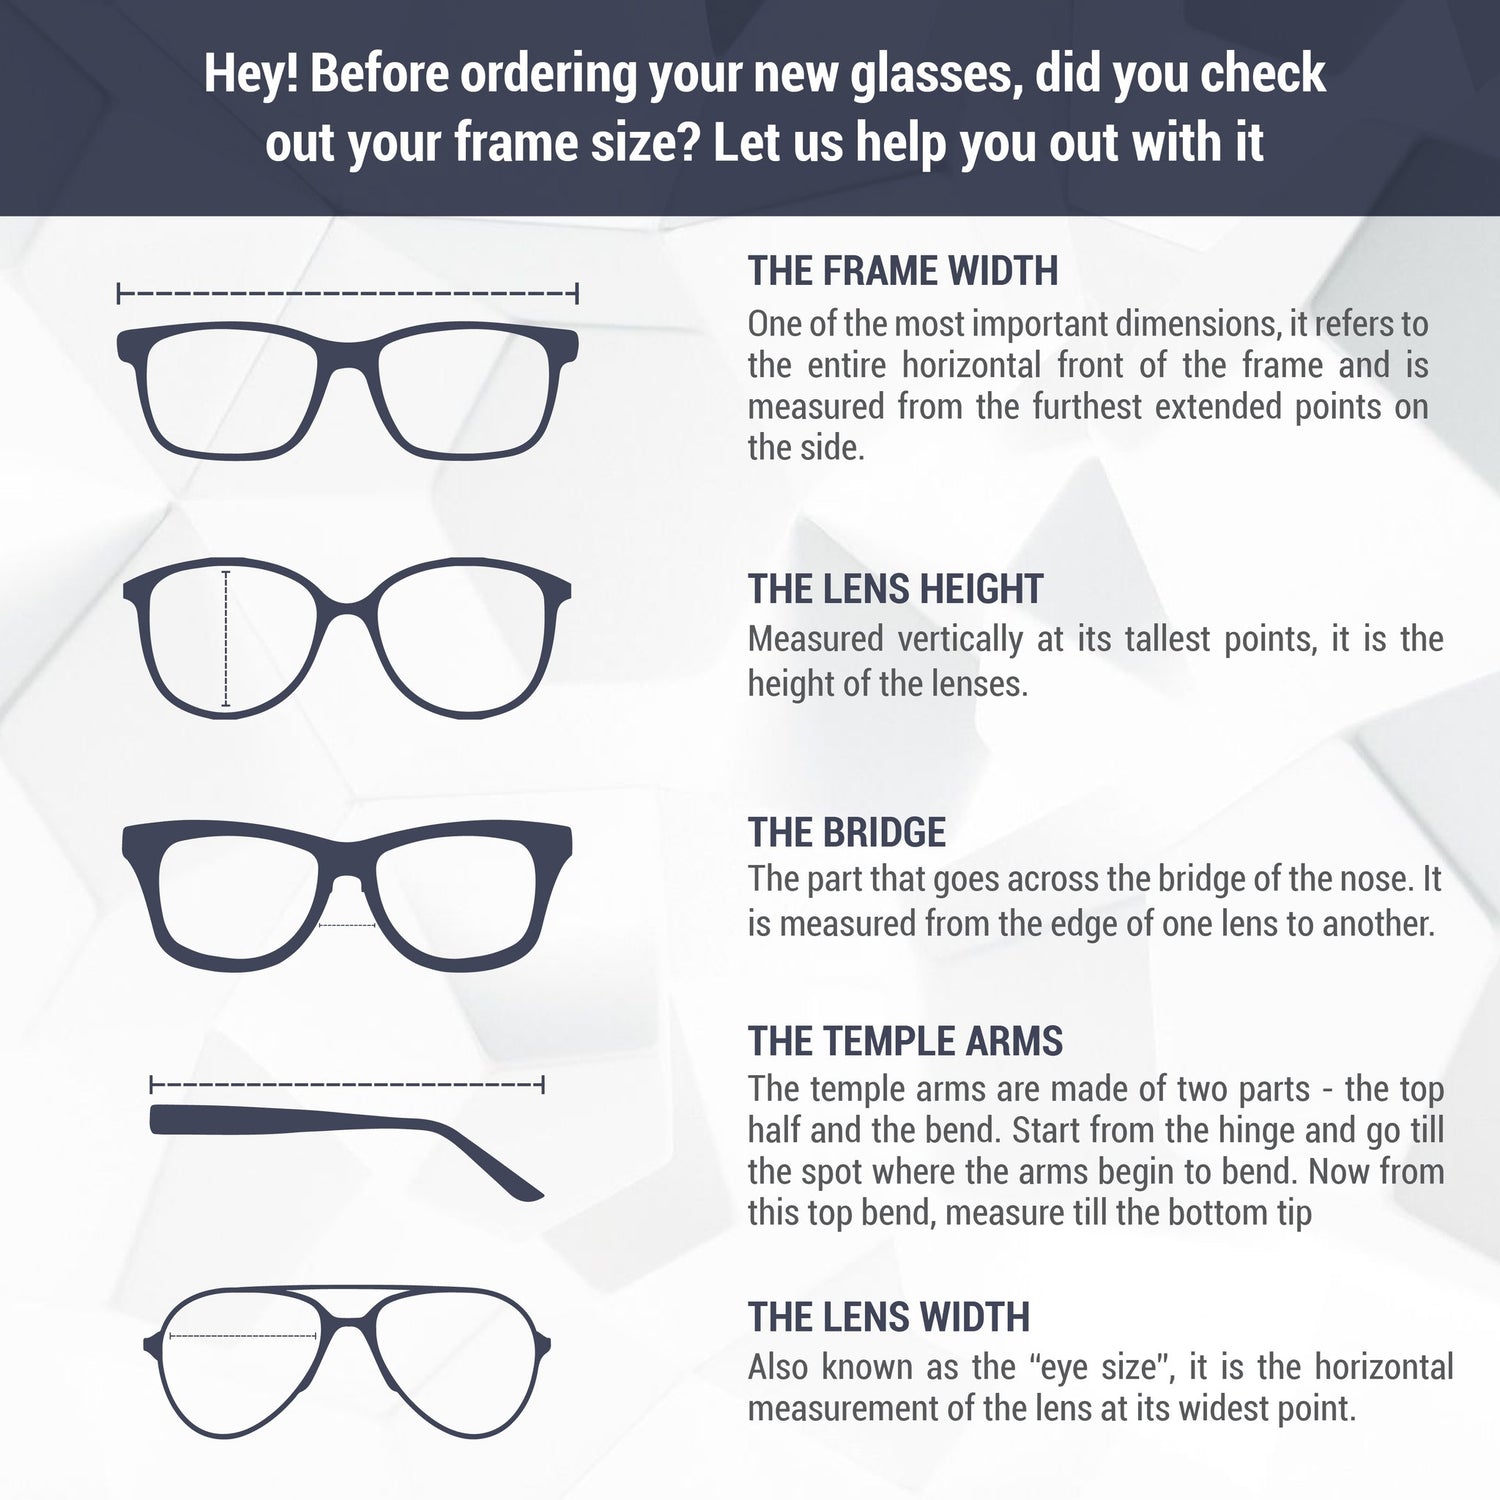 Montatura per occhiali Balenciaga | Modello BB0065O